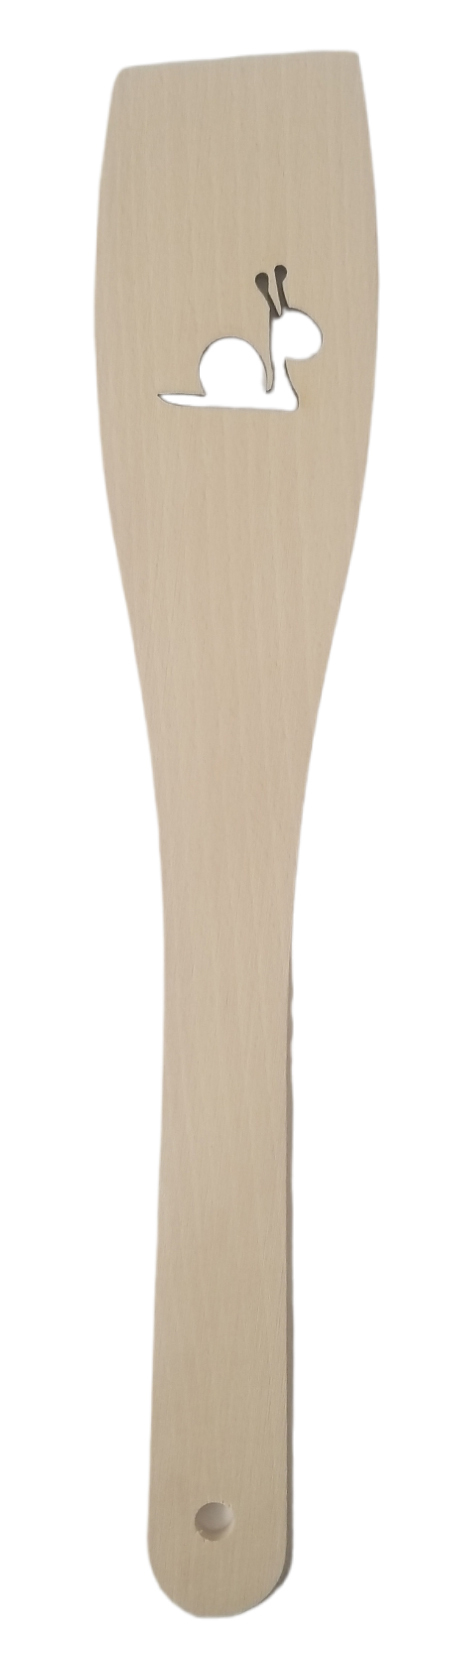 Obracečka dřevěná s motivem 30x6cm - Šnek (12ks/bal)